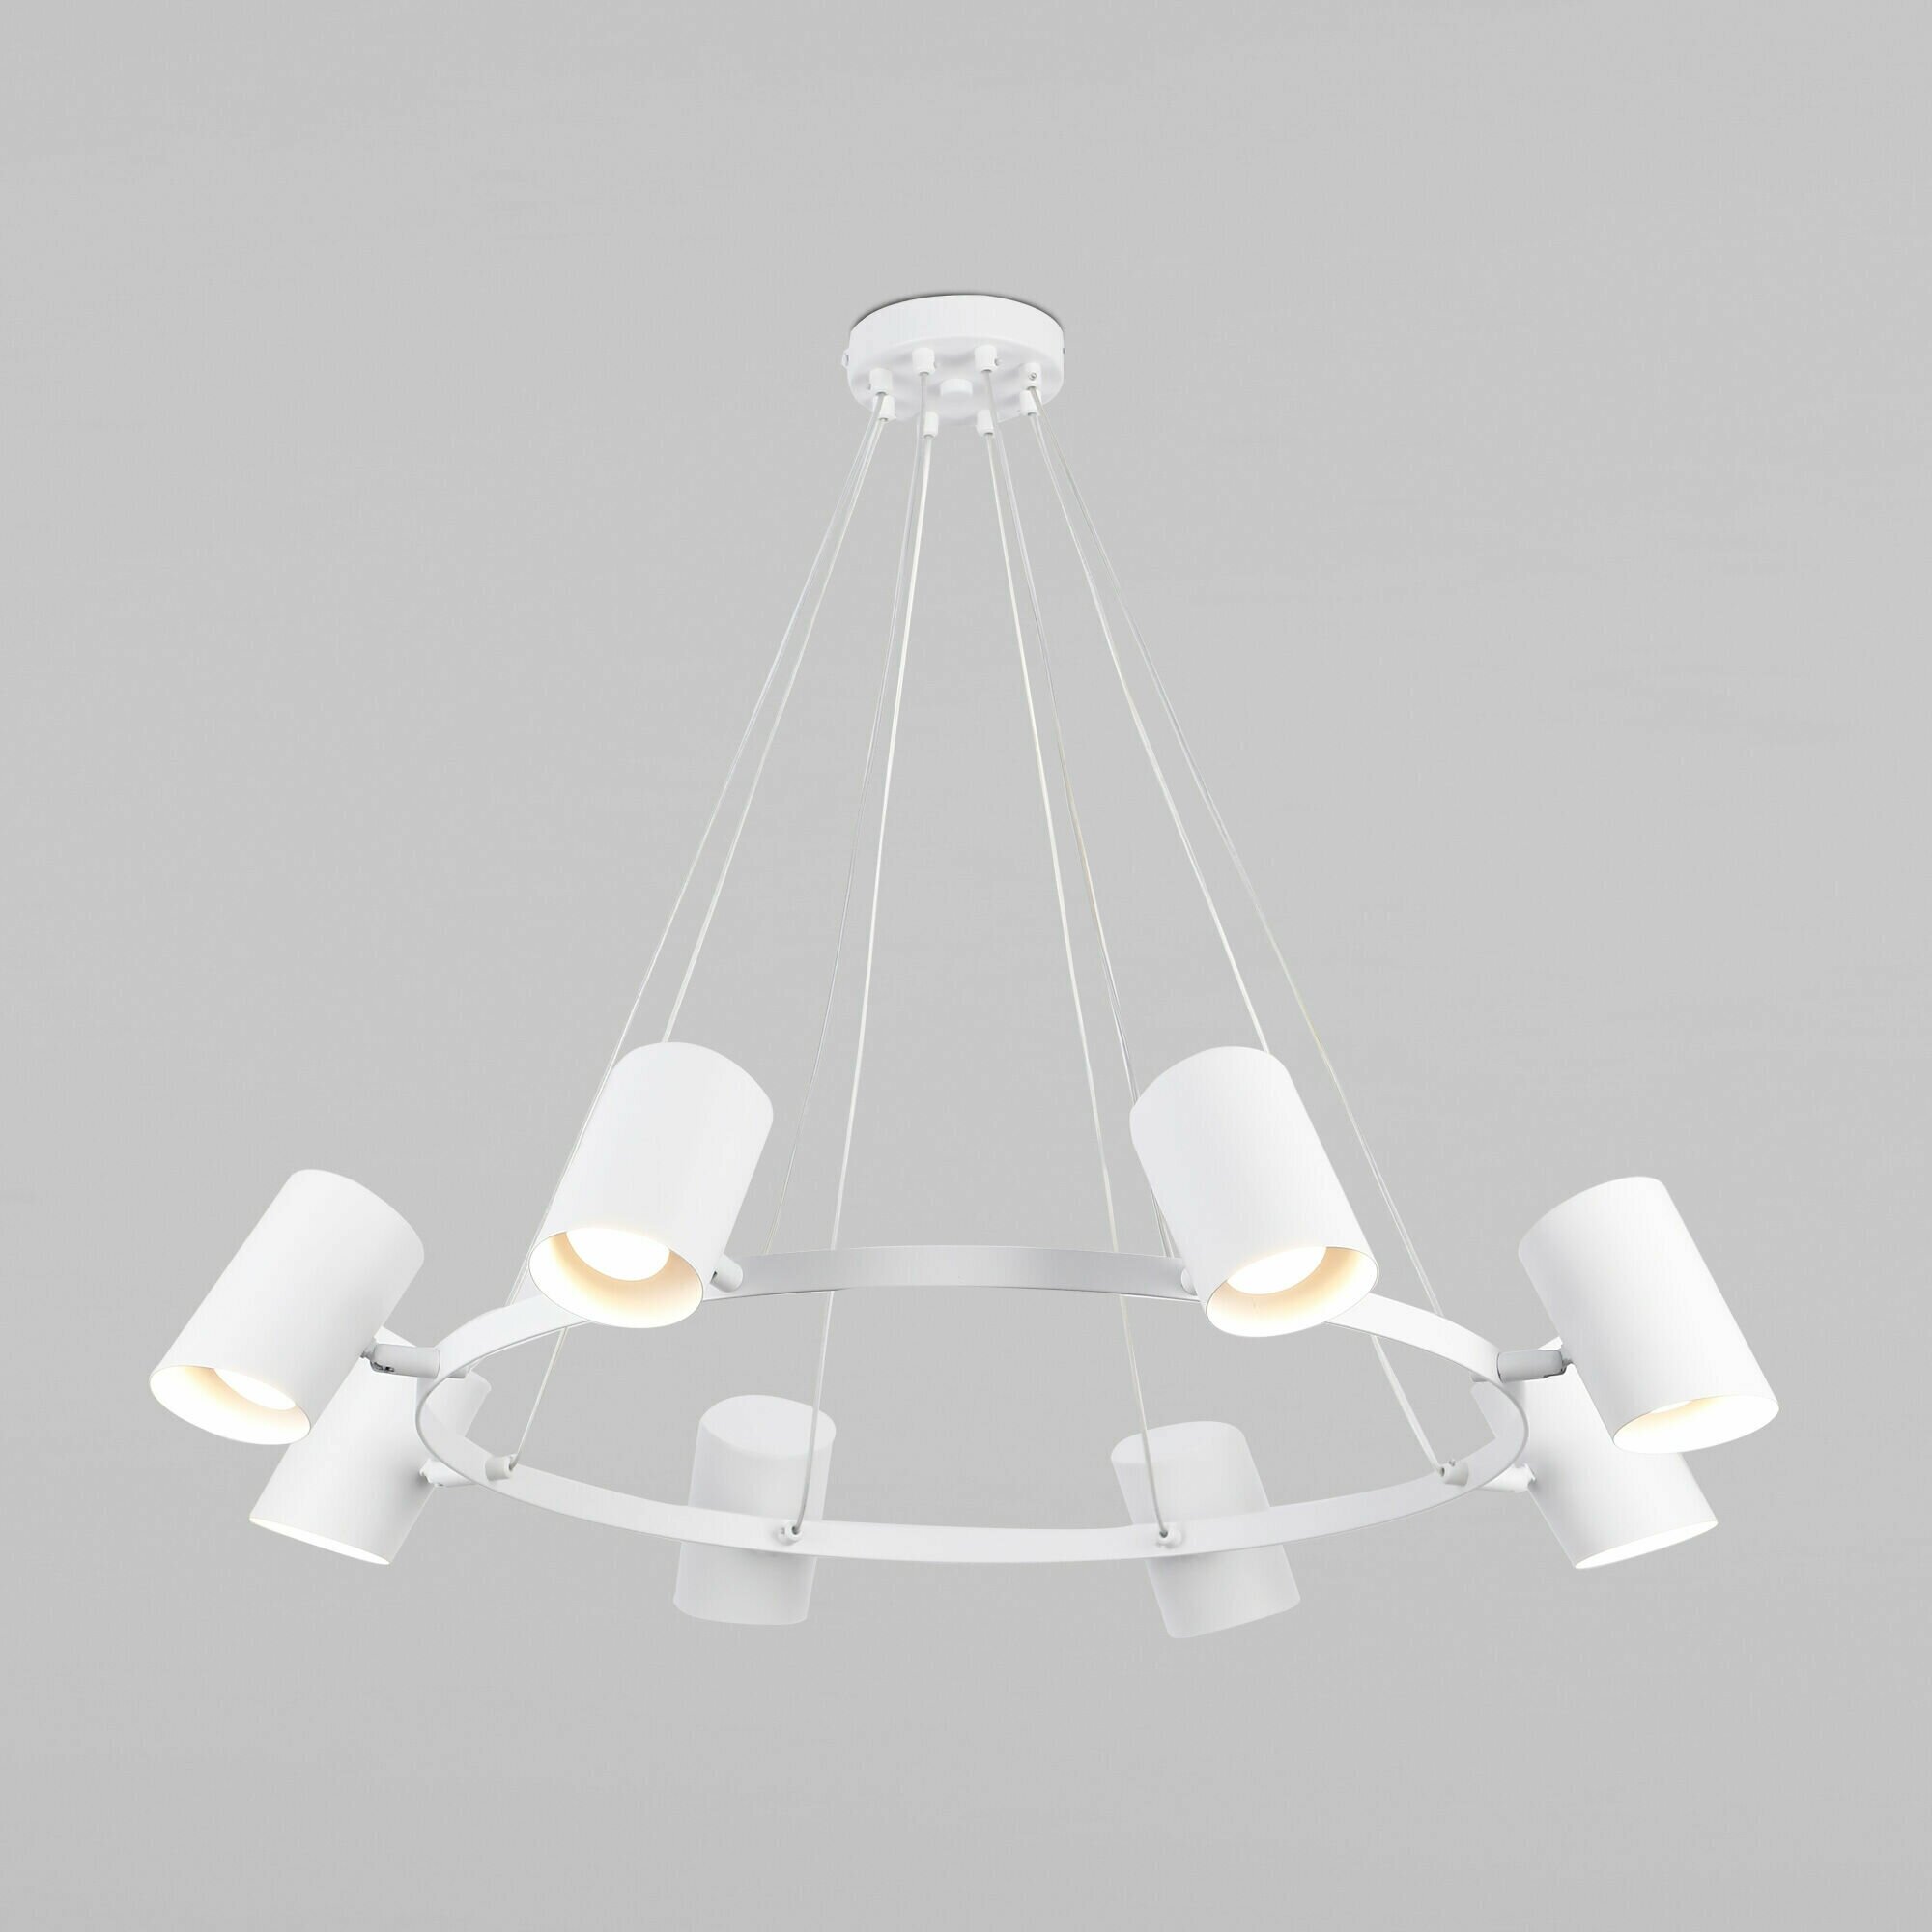 Люстра / Подвесной светильник с поворотными плафонами Eurosvet Splay 70147/8, 8 ламп, GU10, цвет белый, IP20